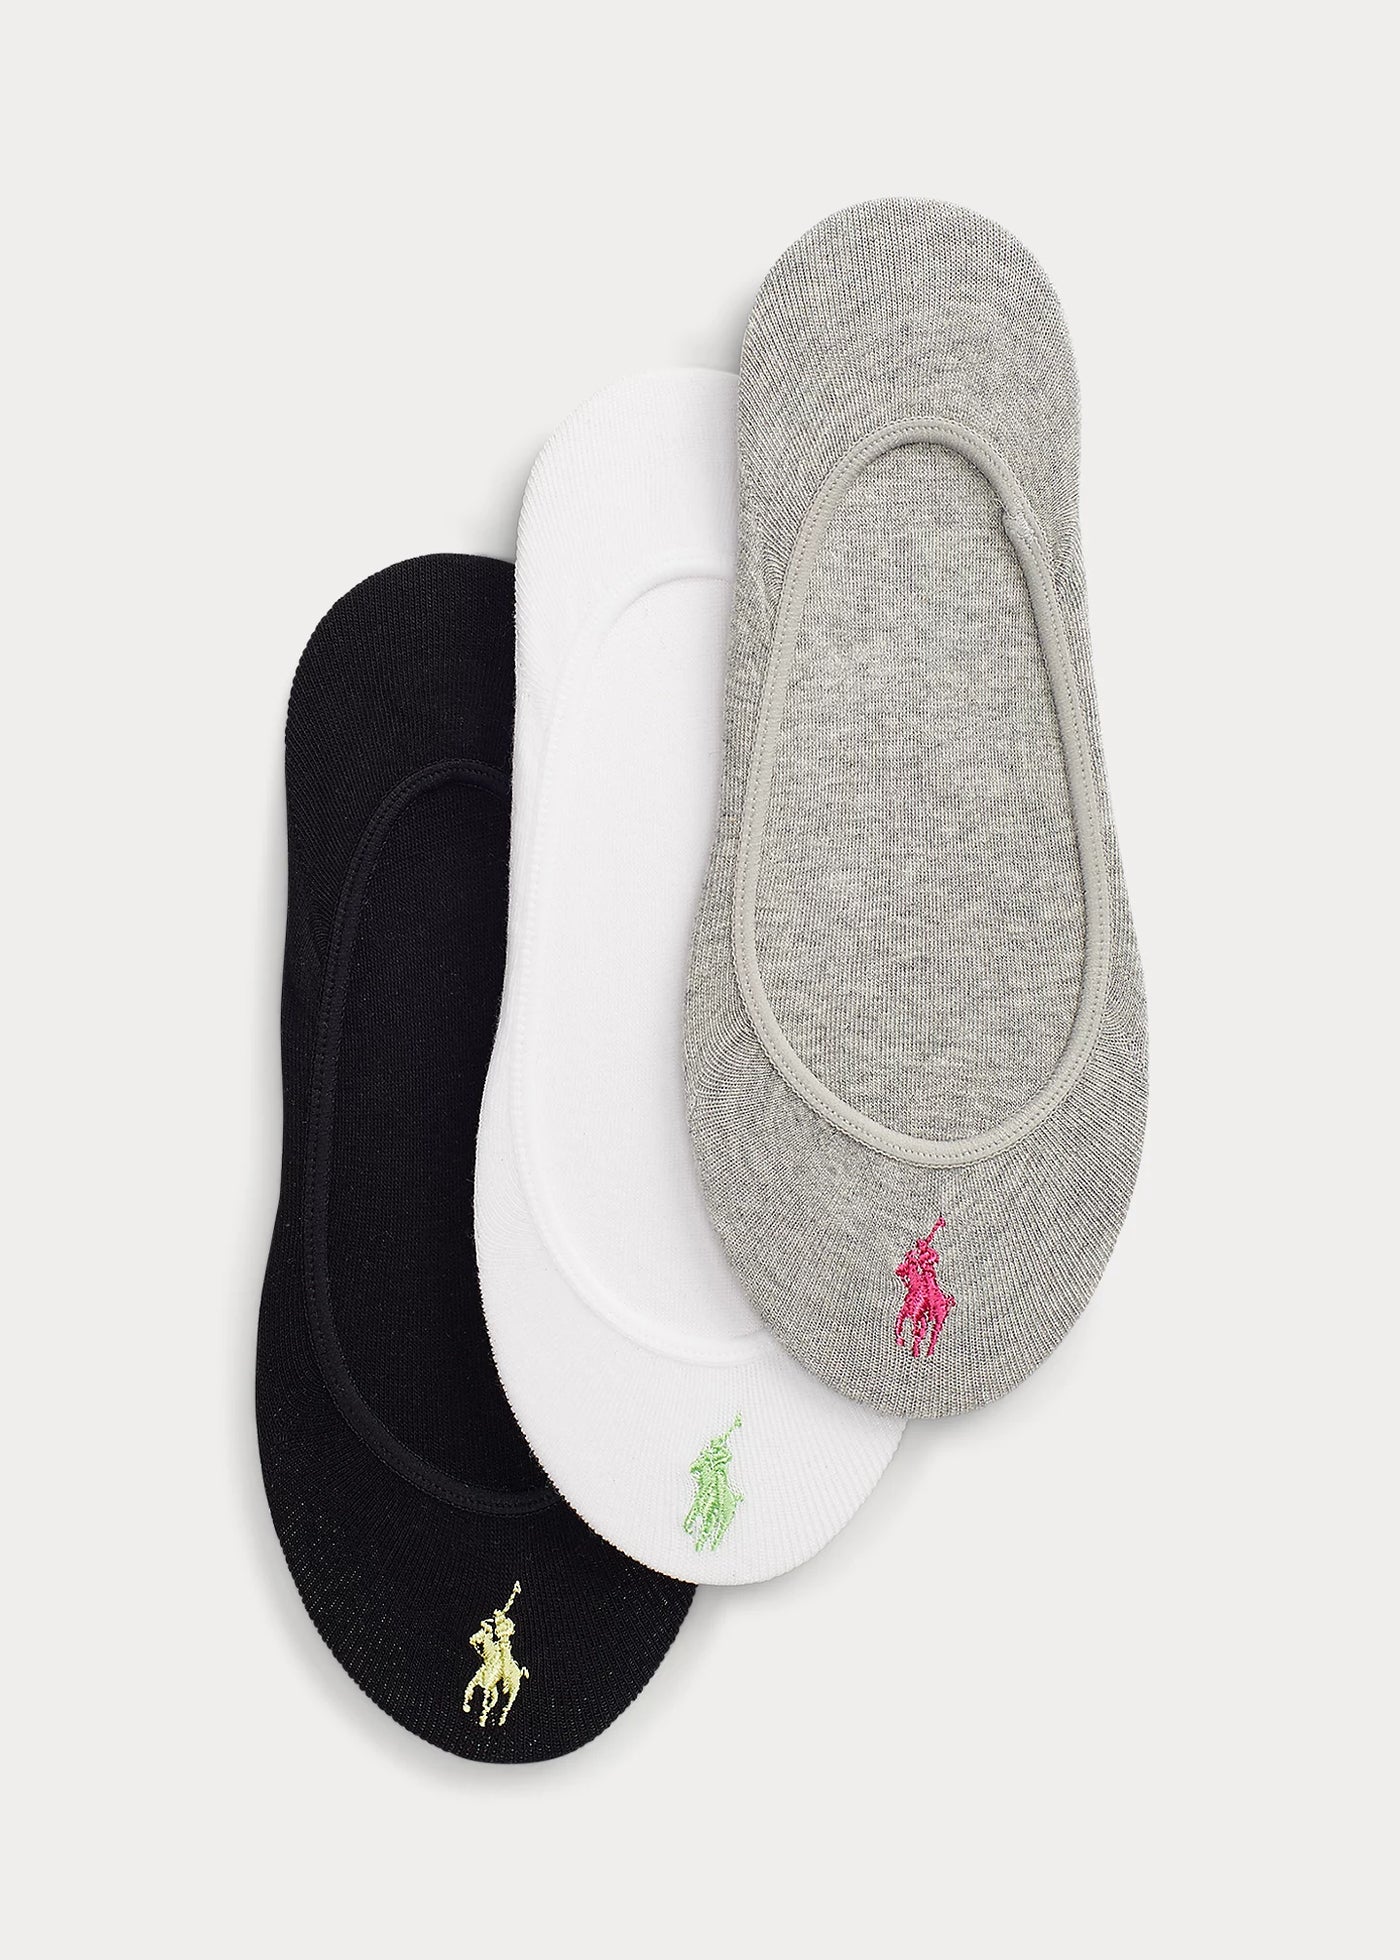 Ralph Lauren Γυναικείες Κάλτσες Σουμπά σε Πακέτο των 3 | Μαύρο/Λευκό/Γκρι